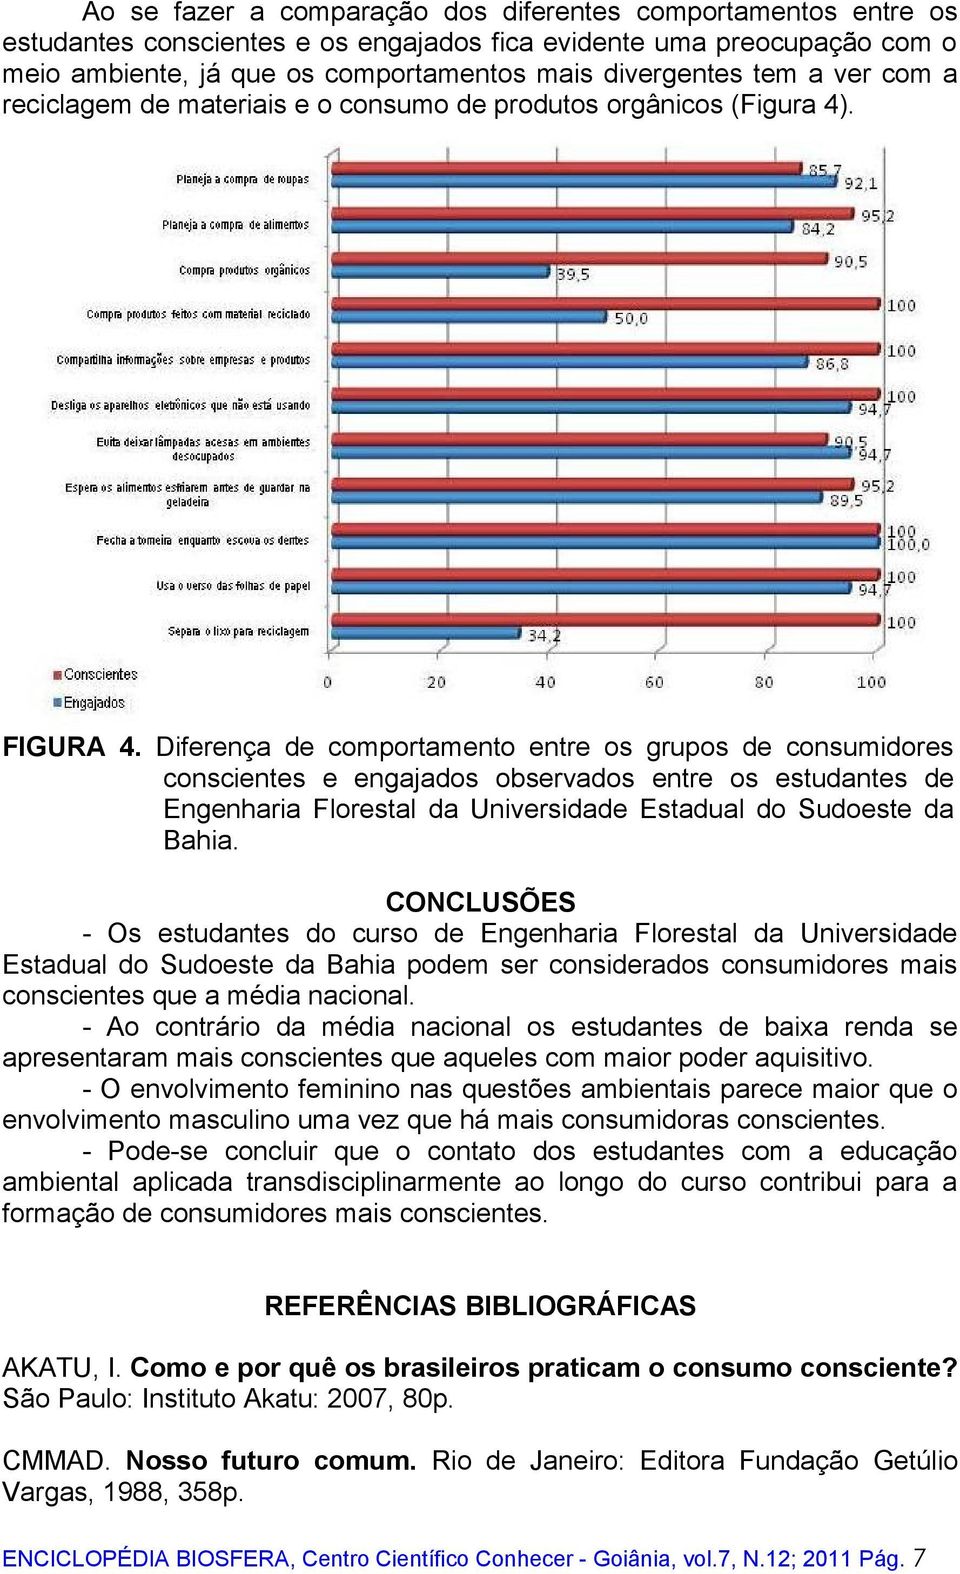 Diferença de comportamento entre os grupos de consumidores conscientes e engajados observados entre os estudantes de Engenharia Florestal da Universidade Estadual do Sudoeste da Bahia.